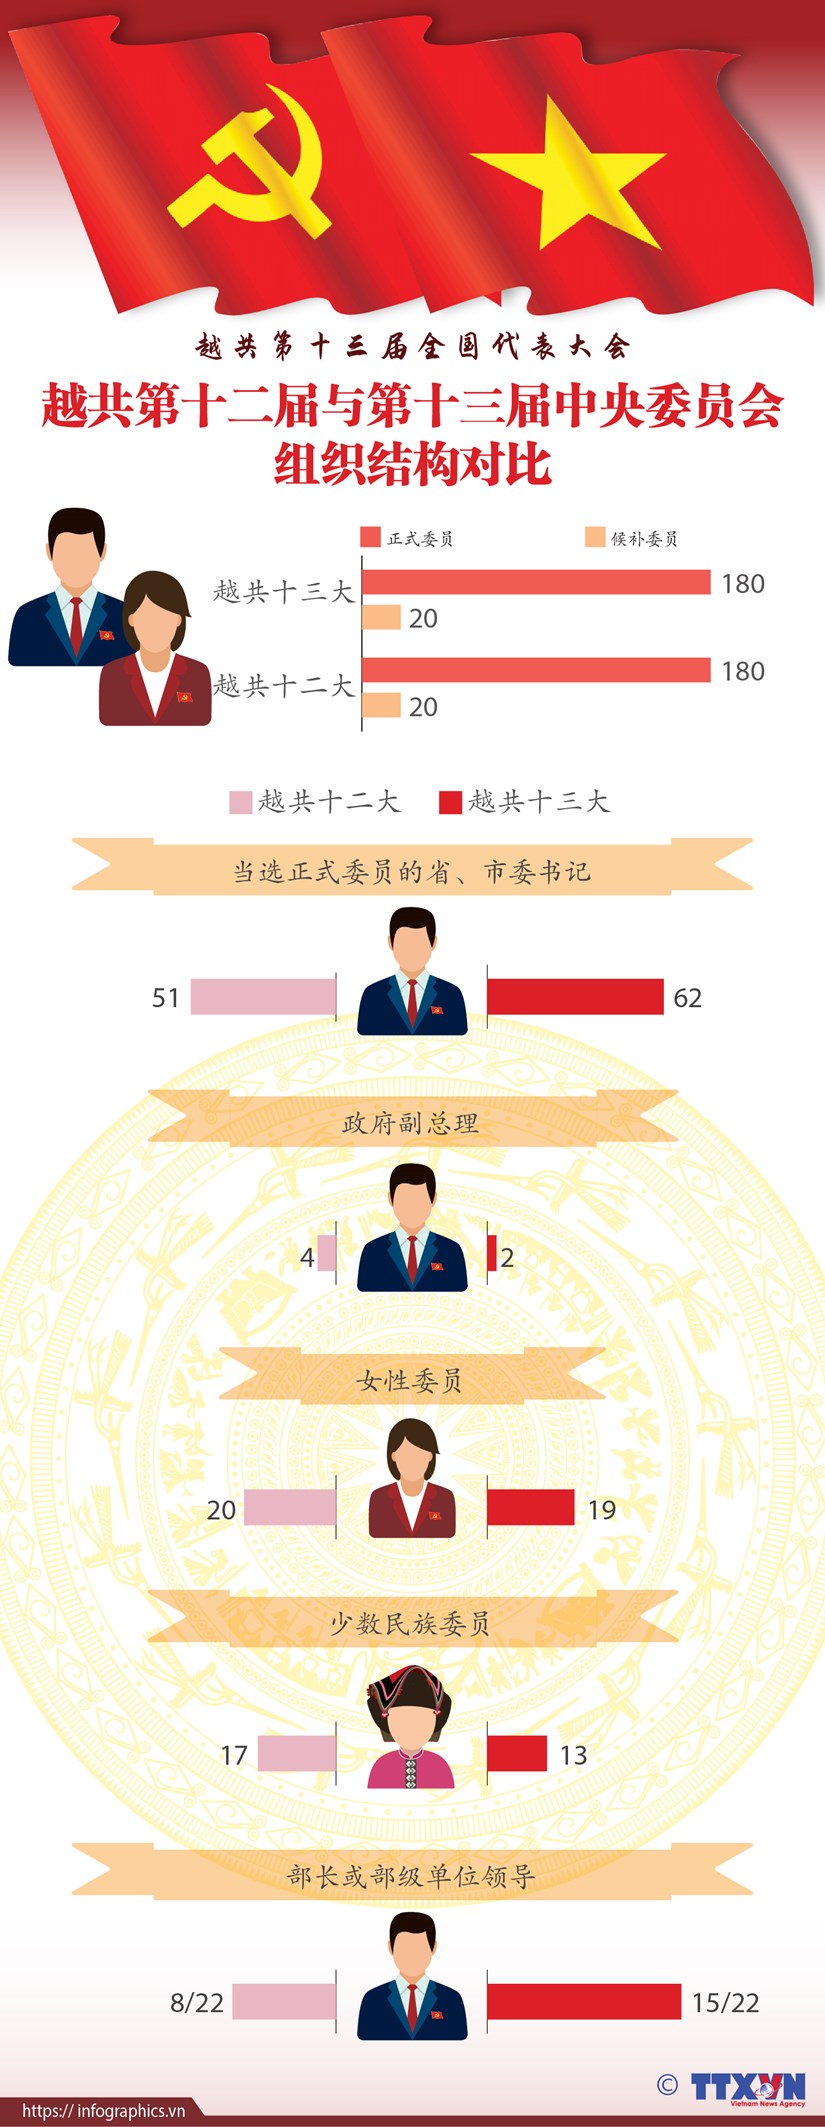 图表新闻：越共第十二届与第十三届中央委员会组织结构对比 hinh anh 1